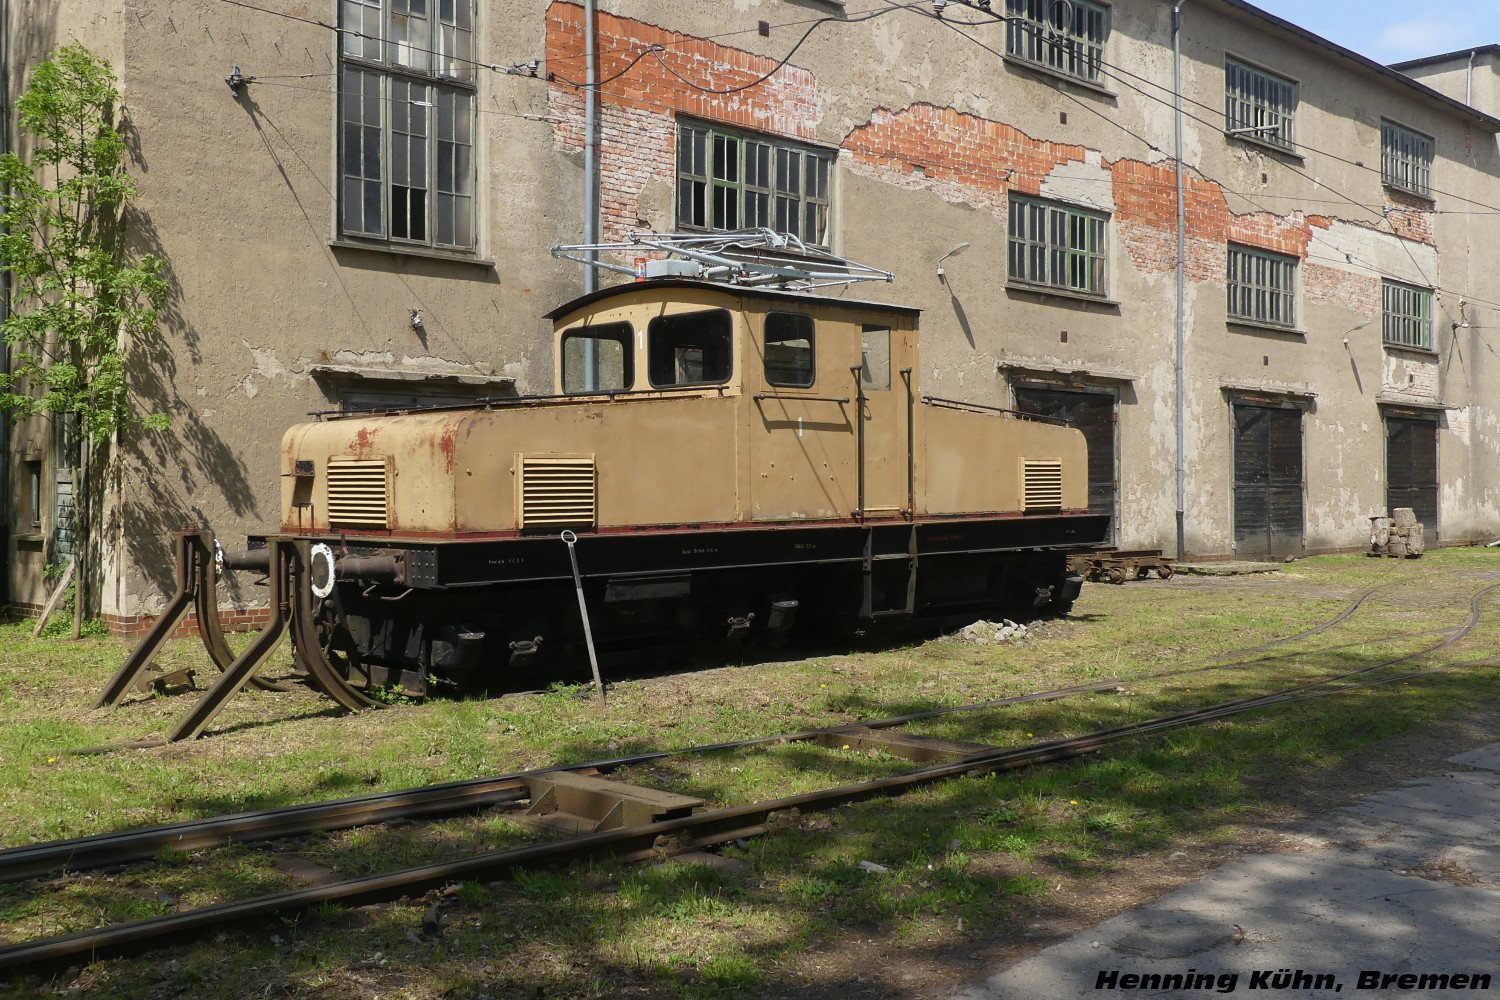 4-axle service Locomotive #Lok 1